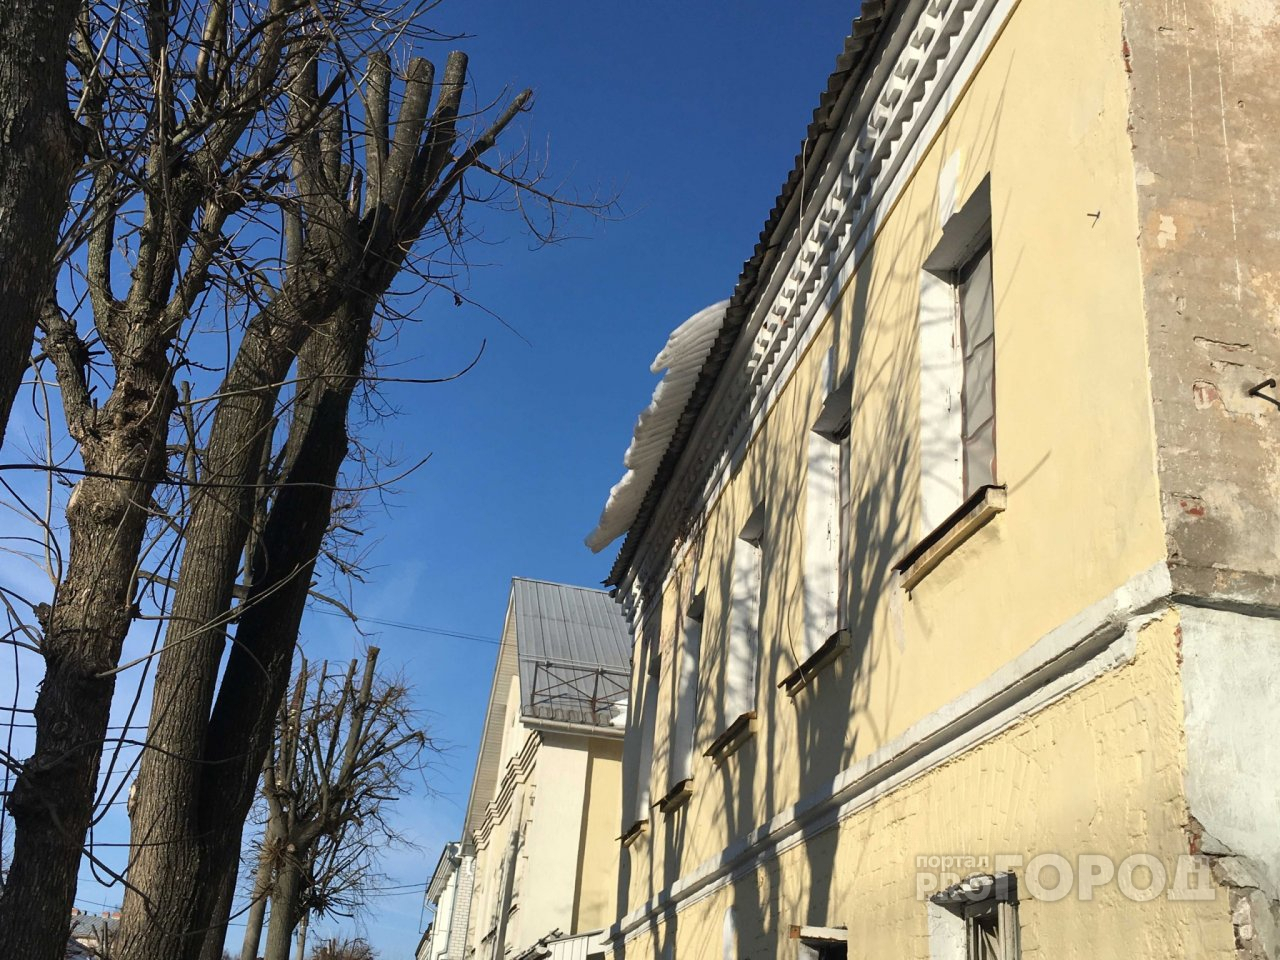 Во Владимире люди опасаются свисающей с крыши снежной наледи